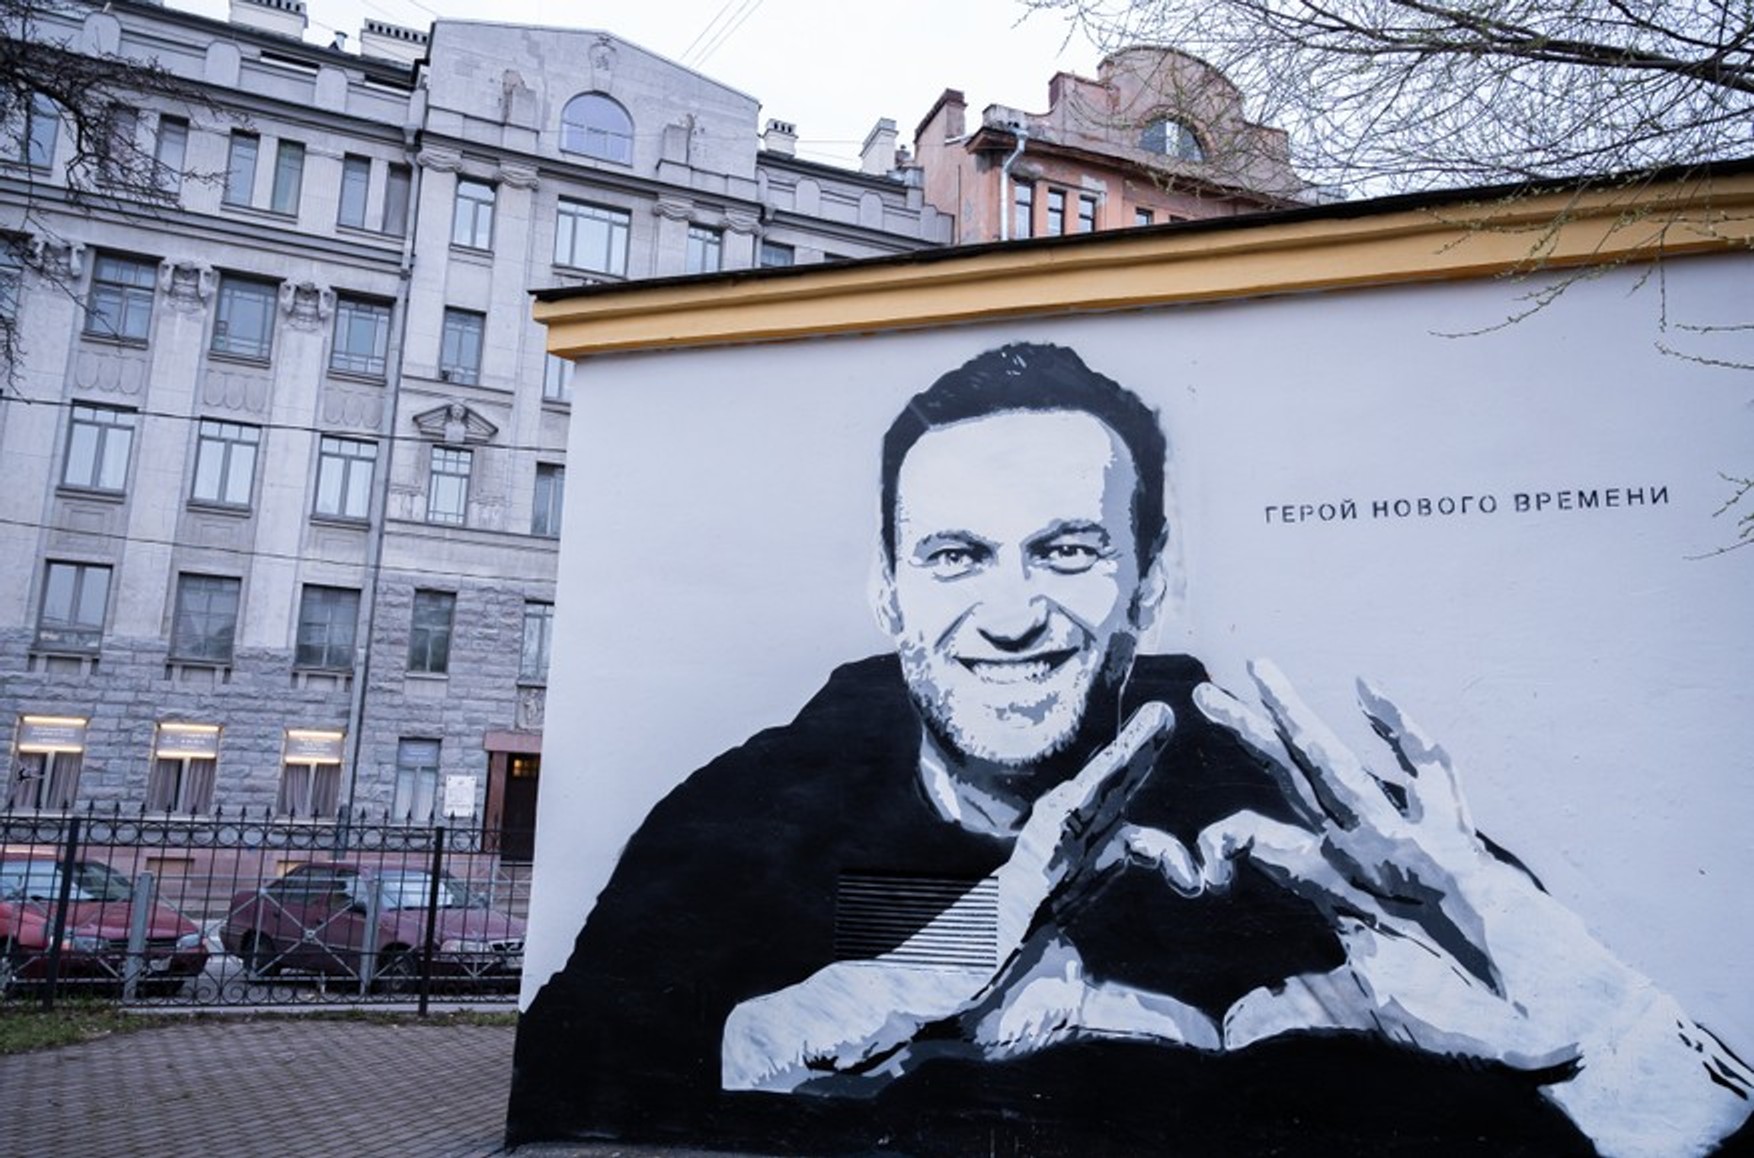 Через графіті з Навальний в Петербурзі завели кримінальну справу про вандалізм